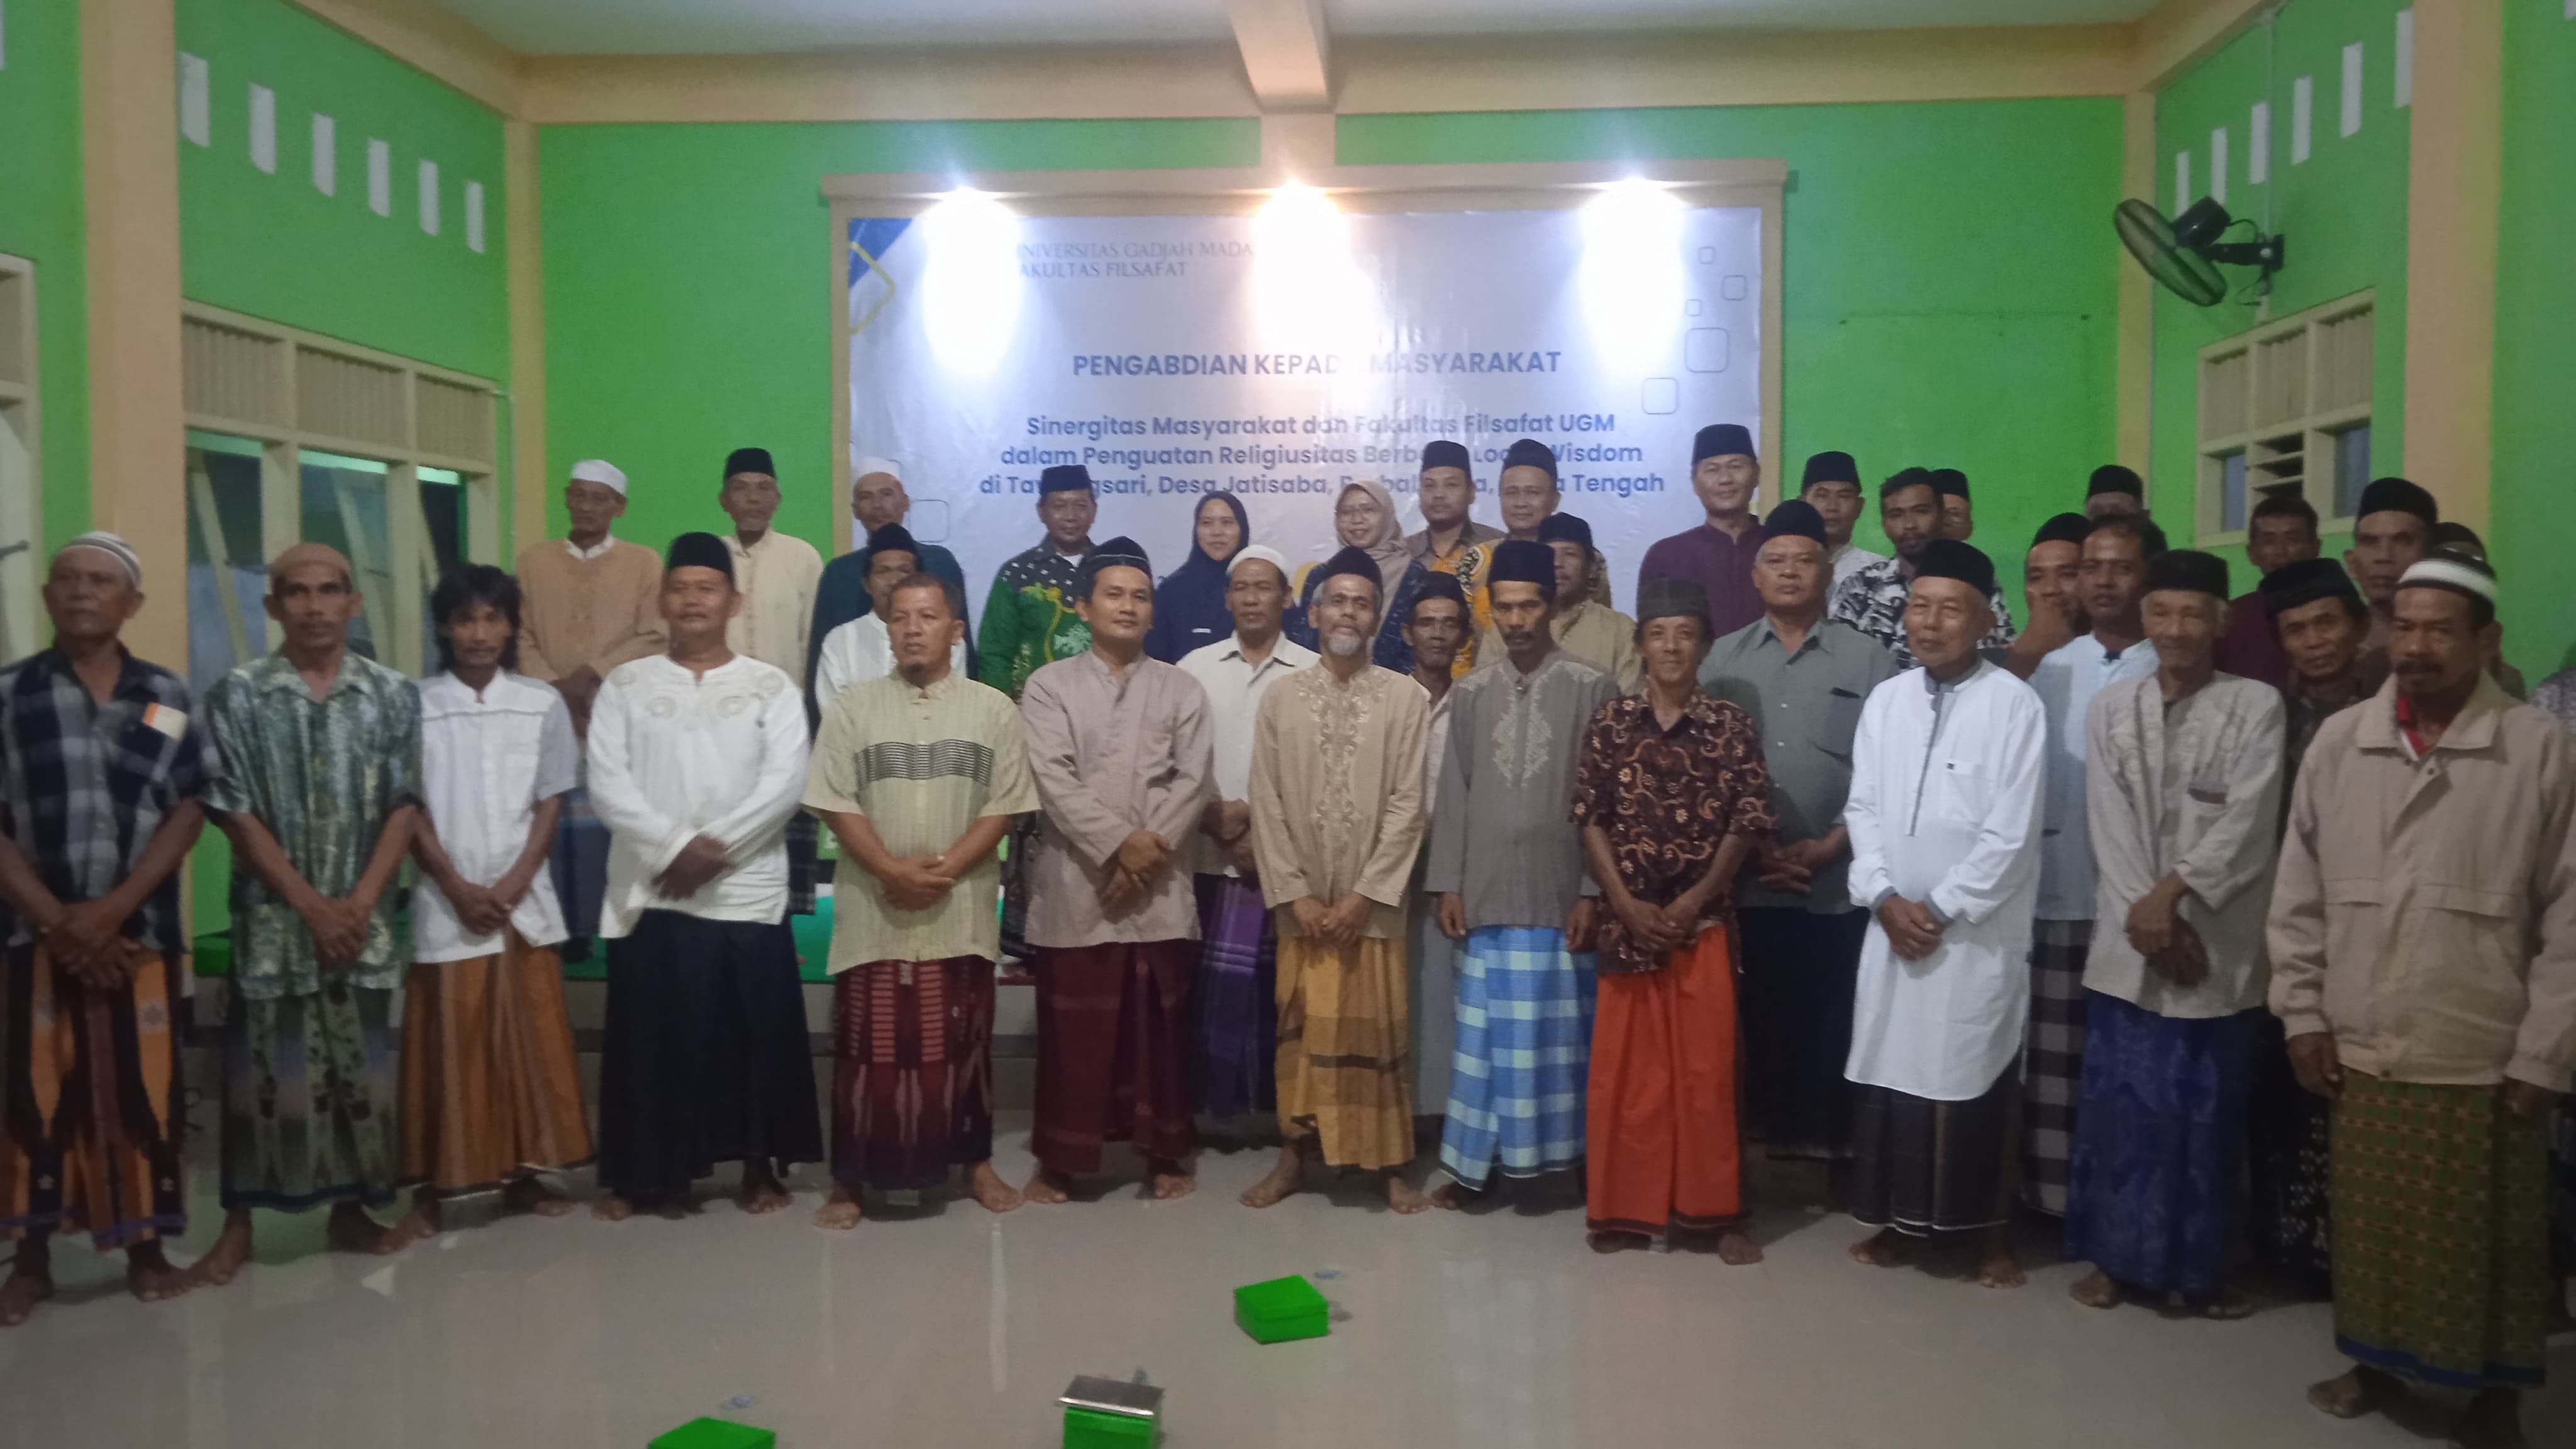 Warga Tawangsari, Jatisaba, dan Guru Besar UGM Jalin Sinergitas Berbasis Kearifan Lokal